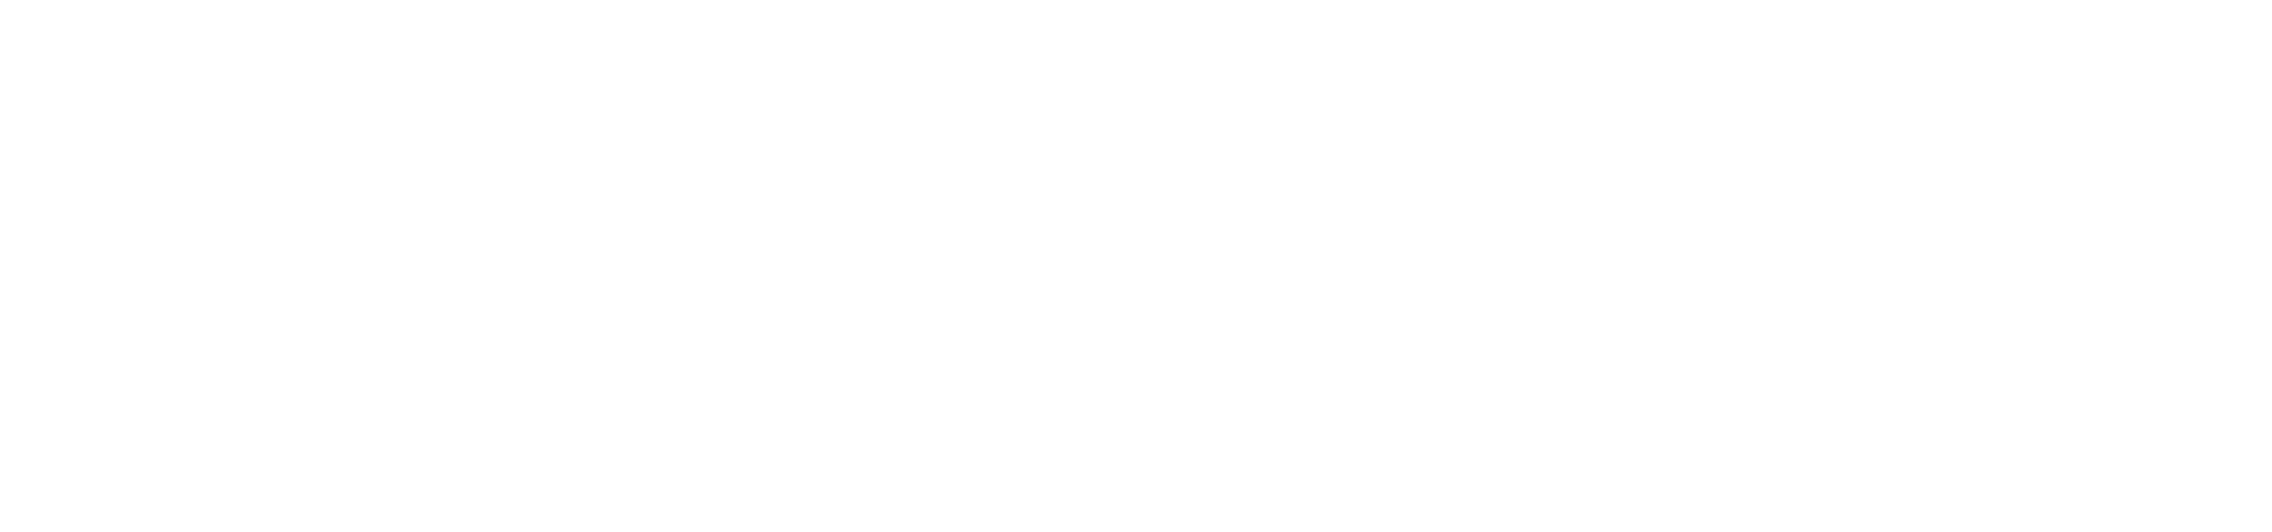 2018 Best Premium Cruise Line